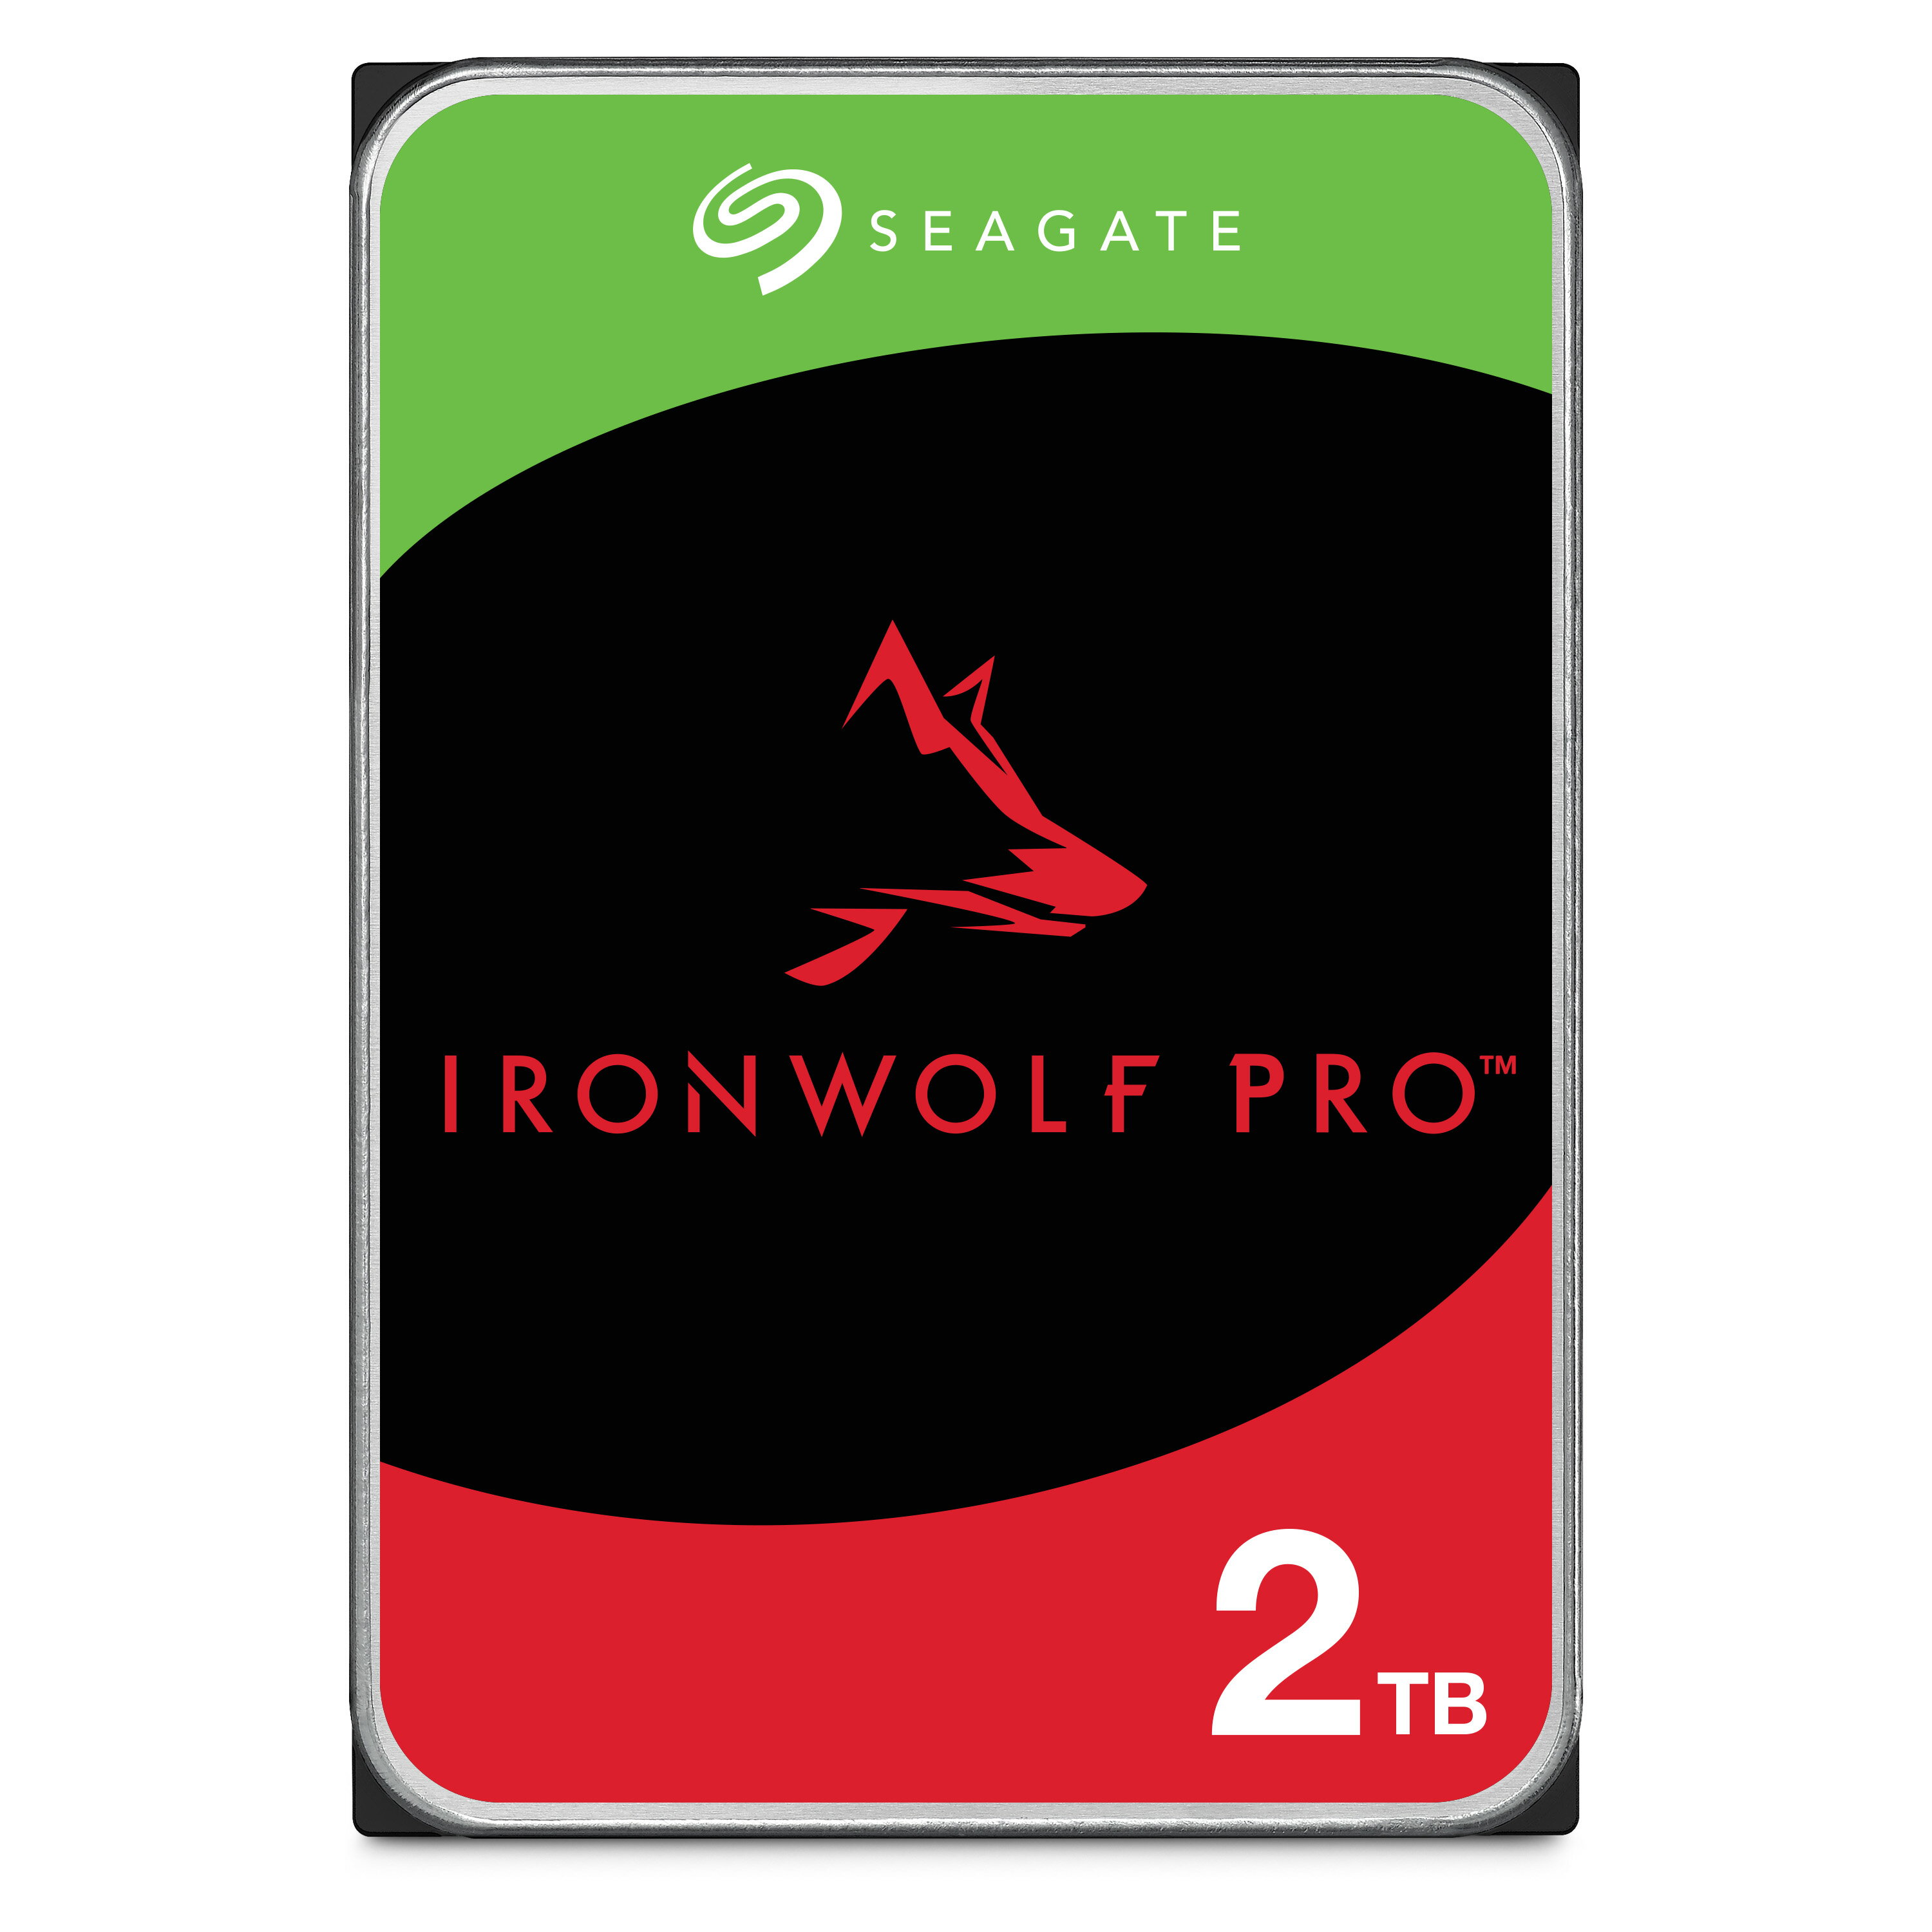 Seagate シーゲイト IronWolf Pro 3.5インチ 【データ復旧 3年付】 2TB 内蔵 ハードディスク HDD CMR 5年保証 6Gb/s 256MB 7200rpm 24時間稼動 PC NAS ST2000NT001